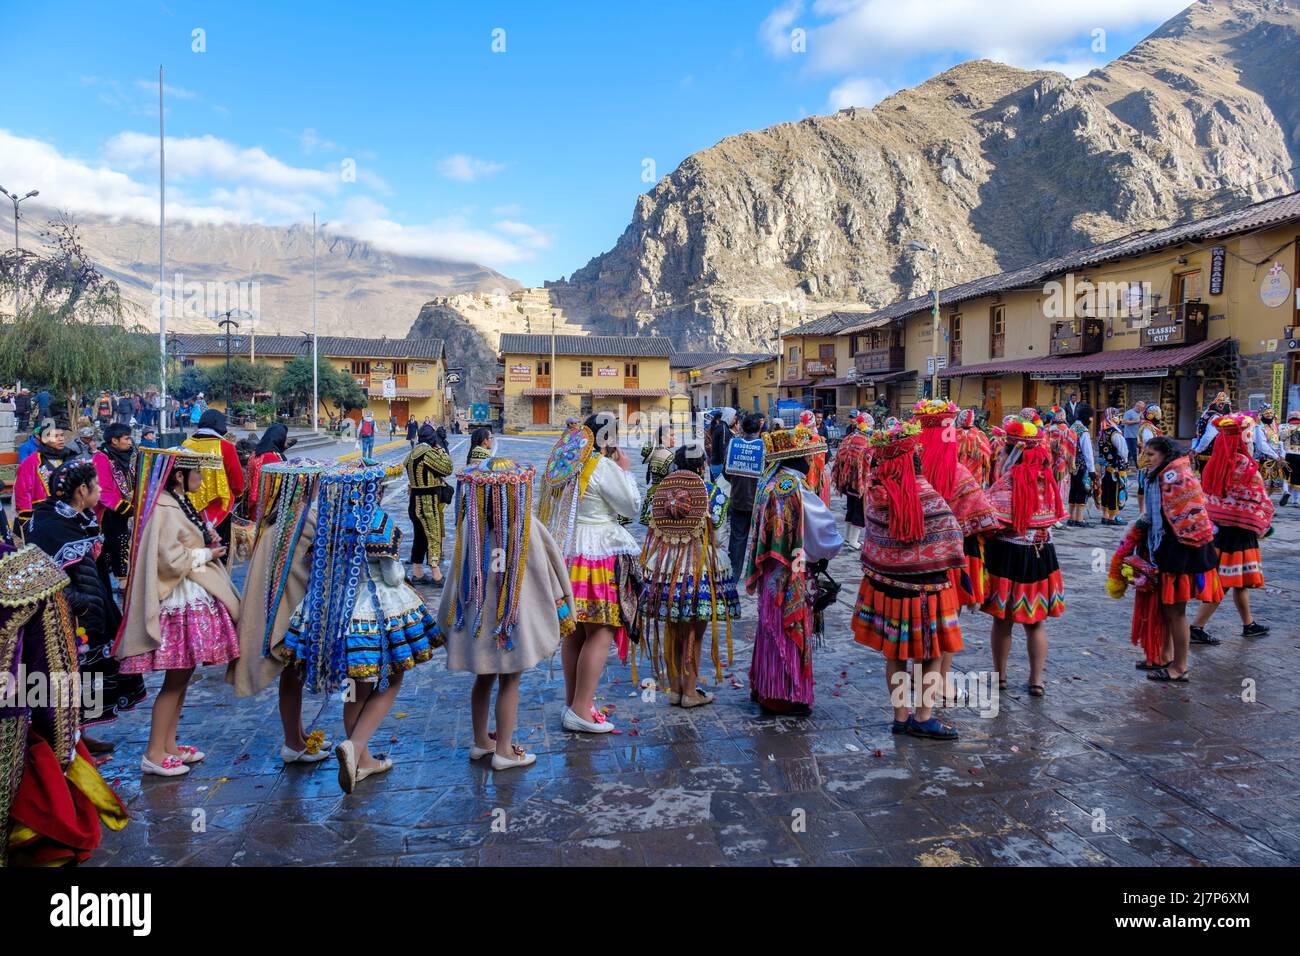 Menschen, die für das Ollantaytambo-Fest, die Plaza de Armas, Berge und Festungsruinen im Hintergrund, das Urubamba-Tal, das Heilige Tal, Peru gekleidet waren Stockfoto